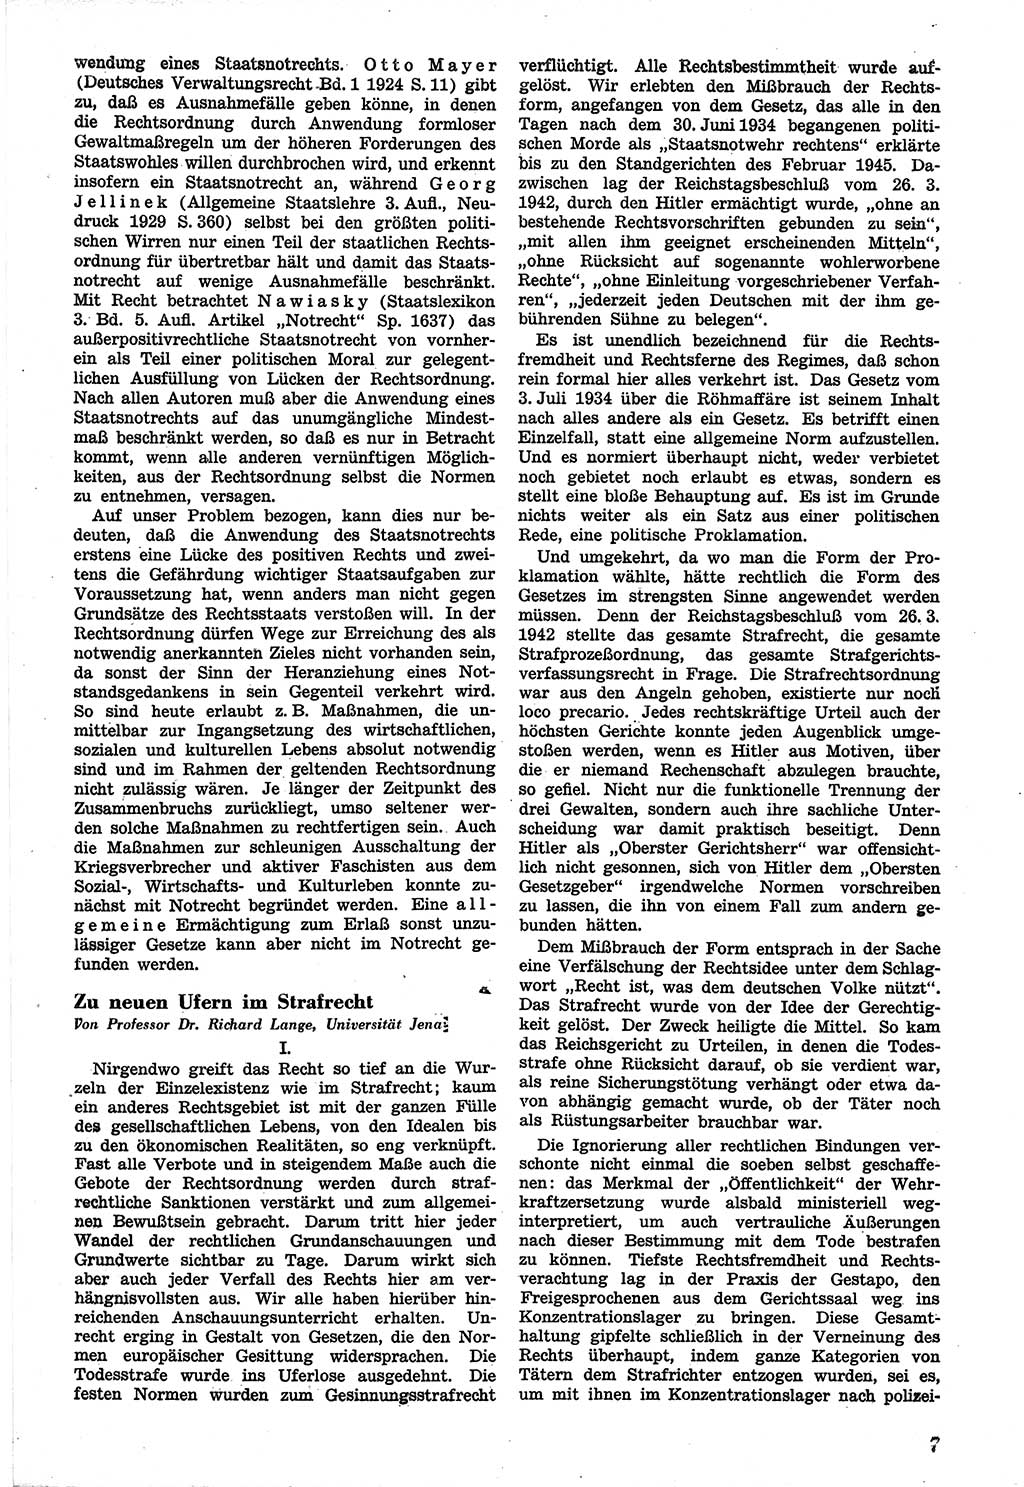 Neue Justiz (NJ), Zeitschrift für Recht und Rechtswissenschaft [Sowjetische Besatzungszone (SBZ) Deutschland], 1. Jahrgang 1947, Seite 7 (NJ SBZ Dtl. 1947, S. 7)